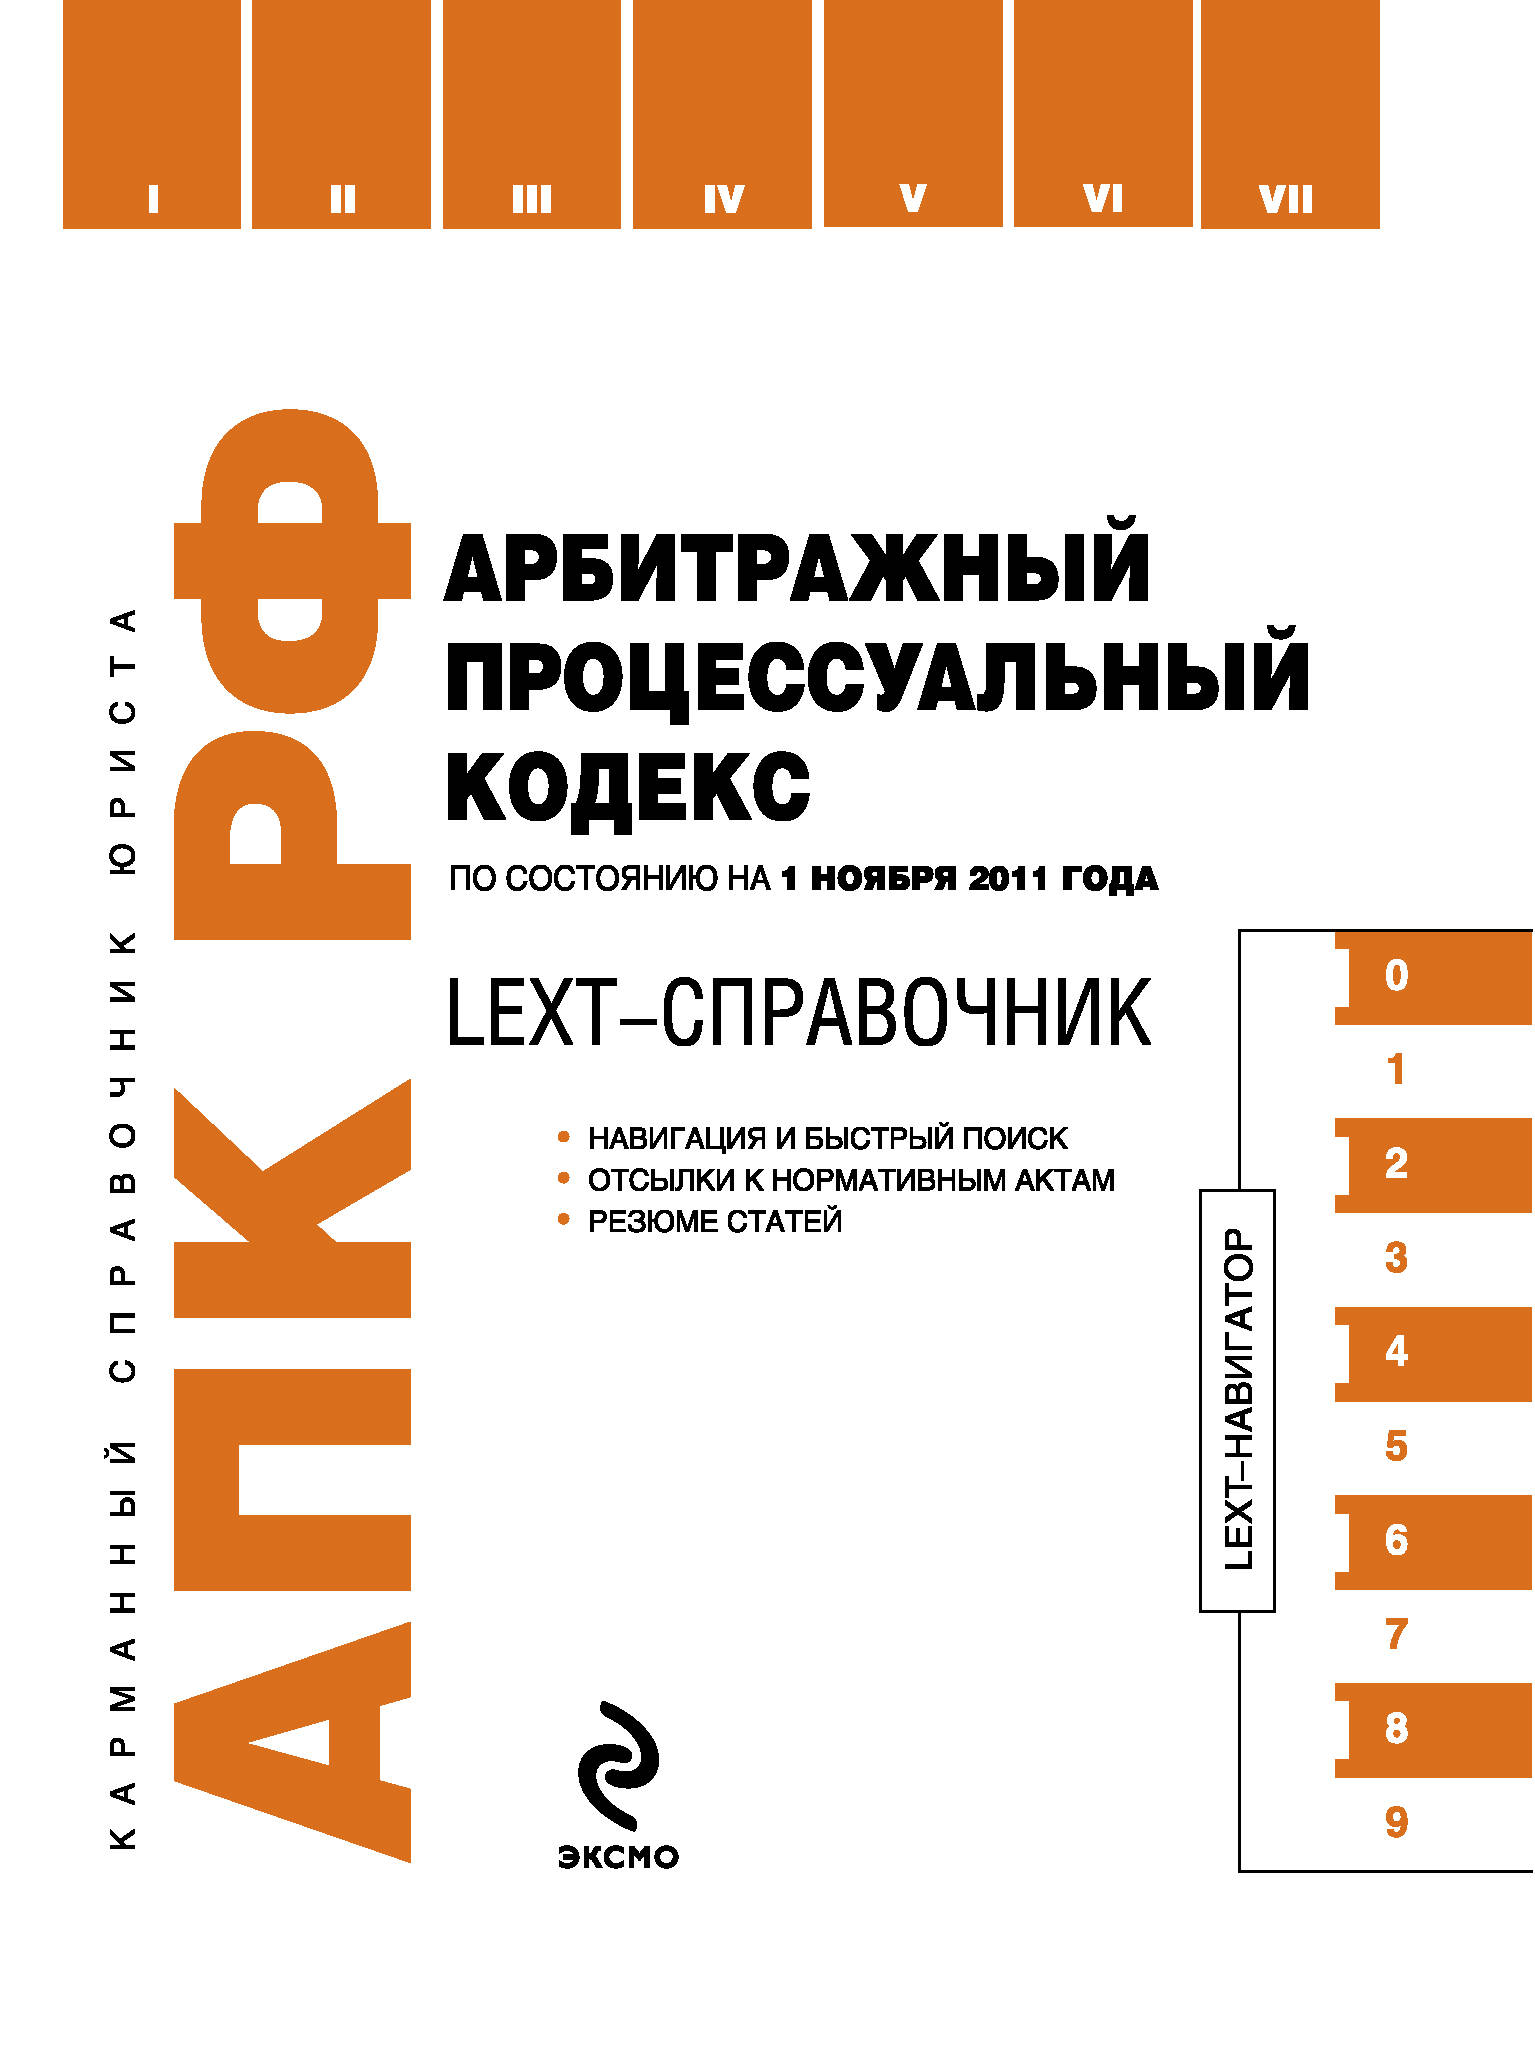 LEXT-справочник. Арбитражный процессуальный кодекс Российской Федерации по состоянию на 1 ноября 2011 года